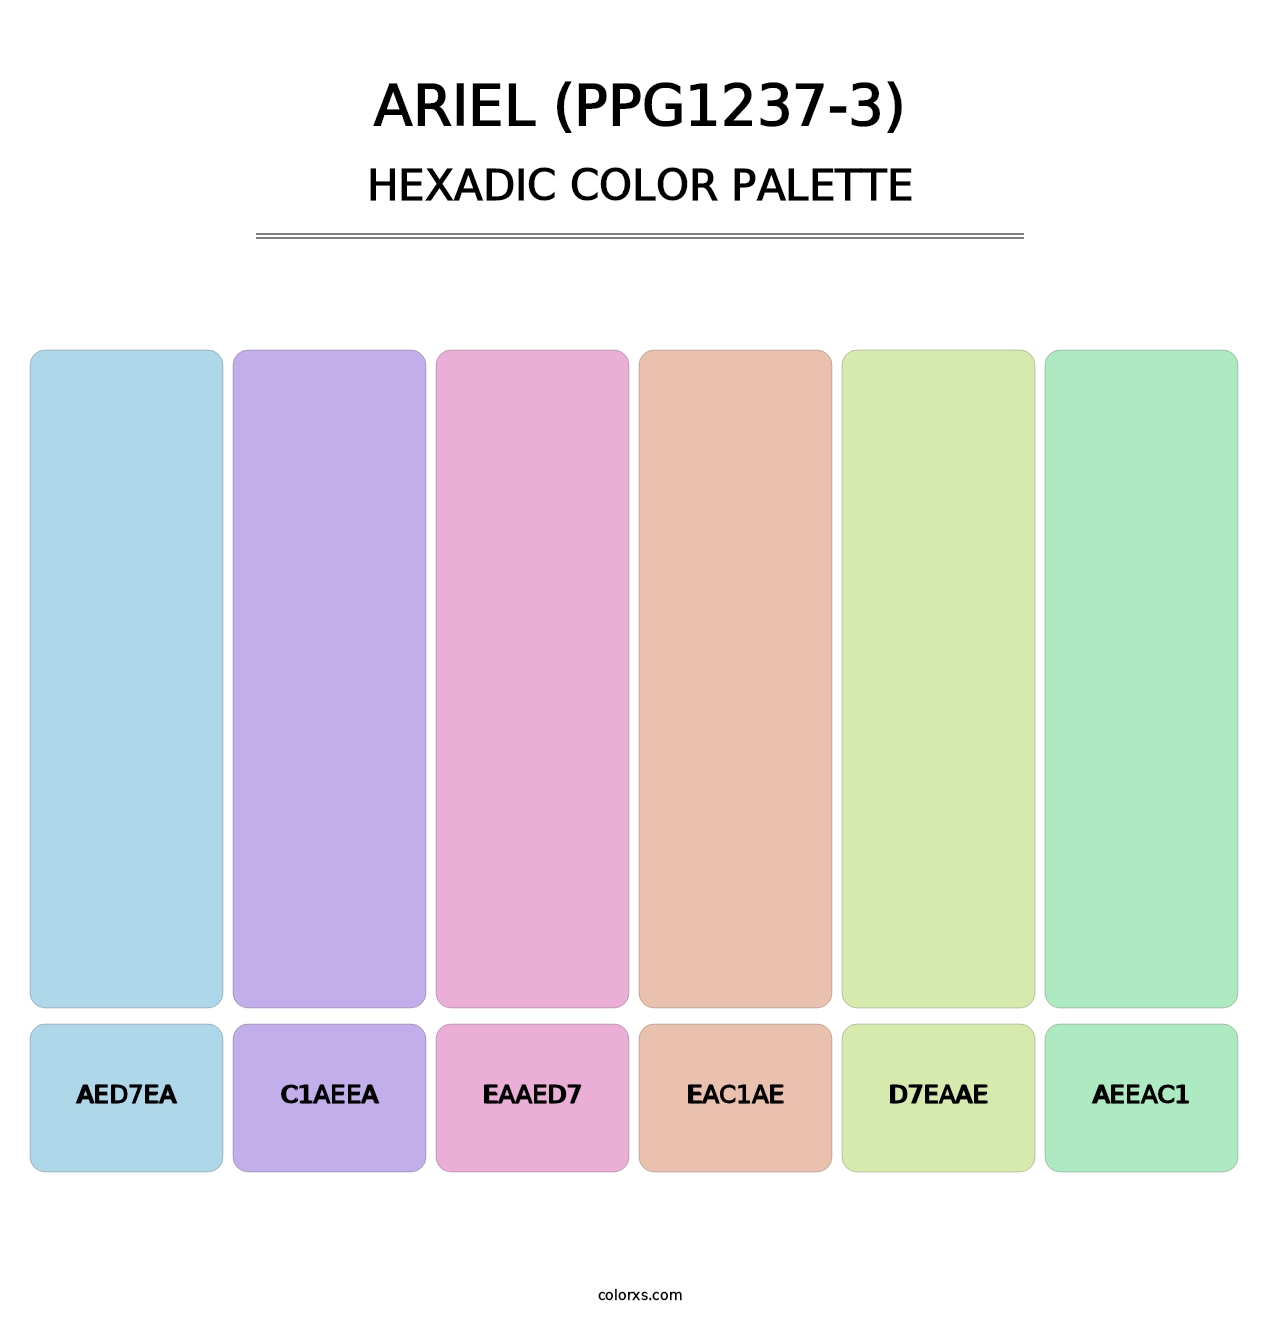 Ariel (PPG1237-3) - Hexadic Color Palette